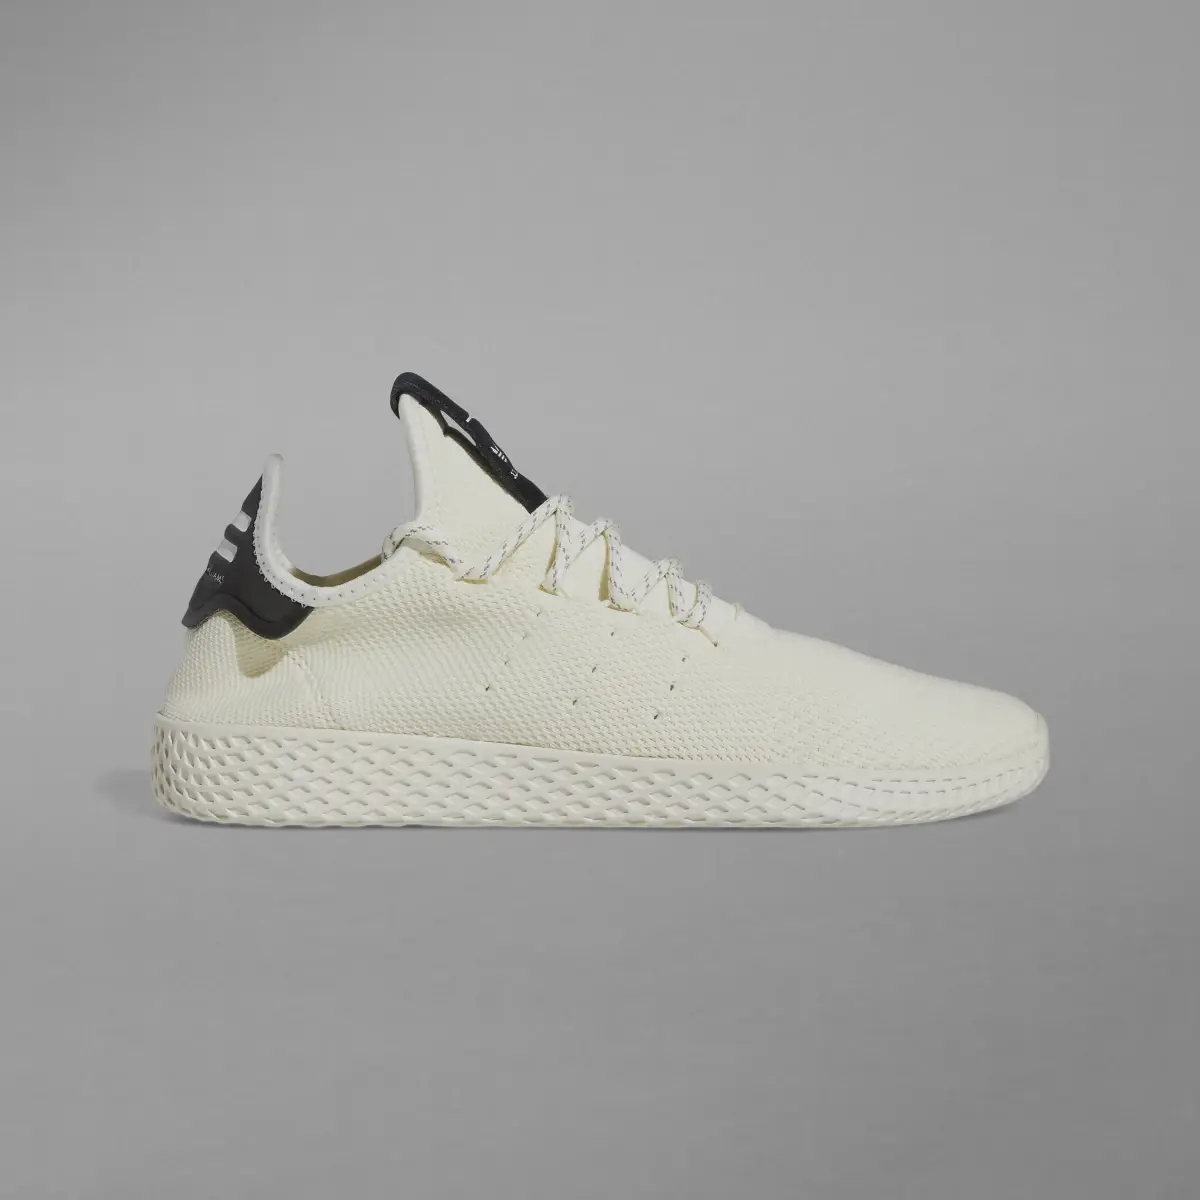 Adidas Tennis Hu Shoes. 2